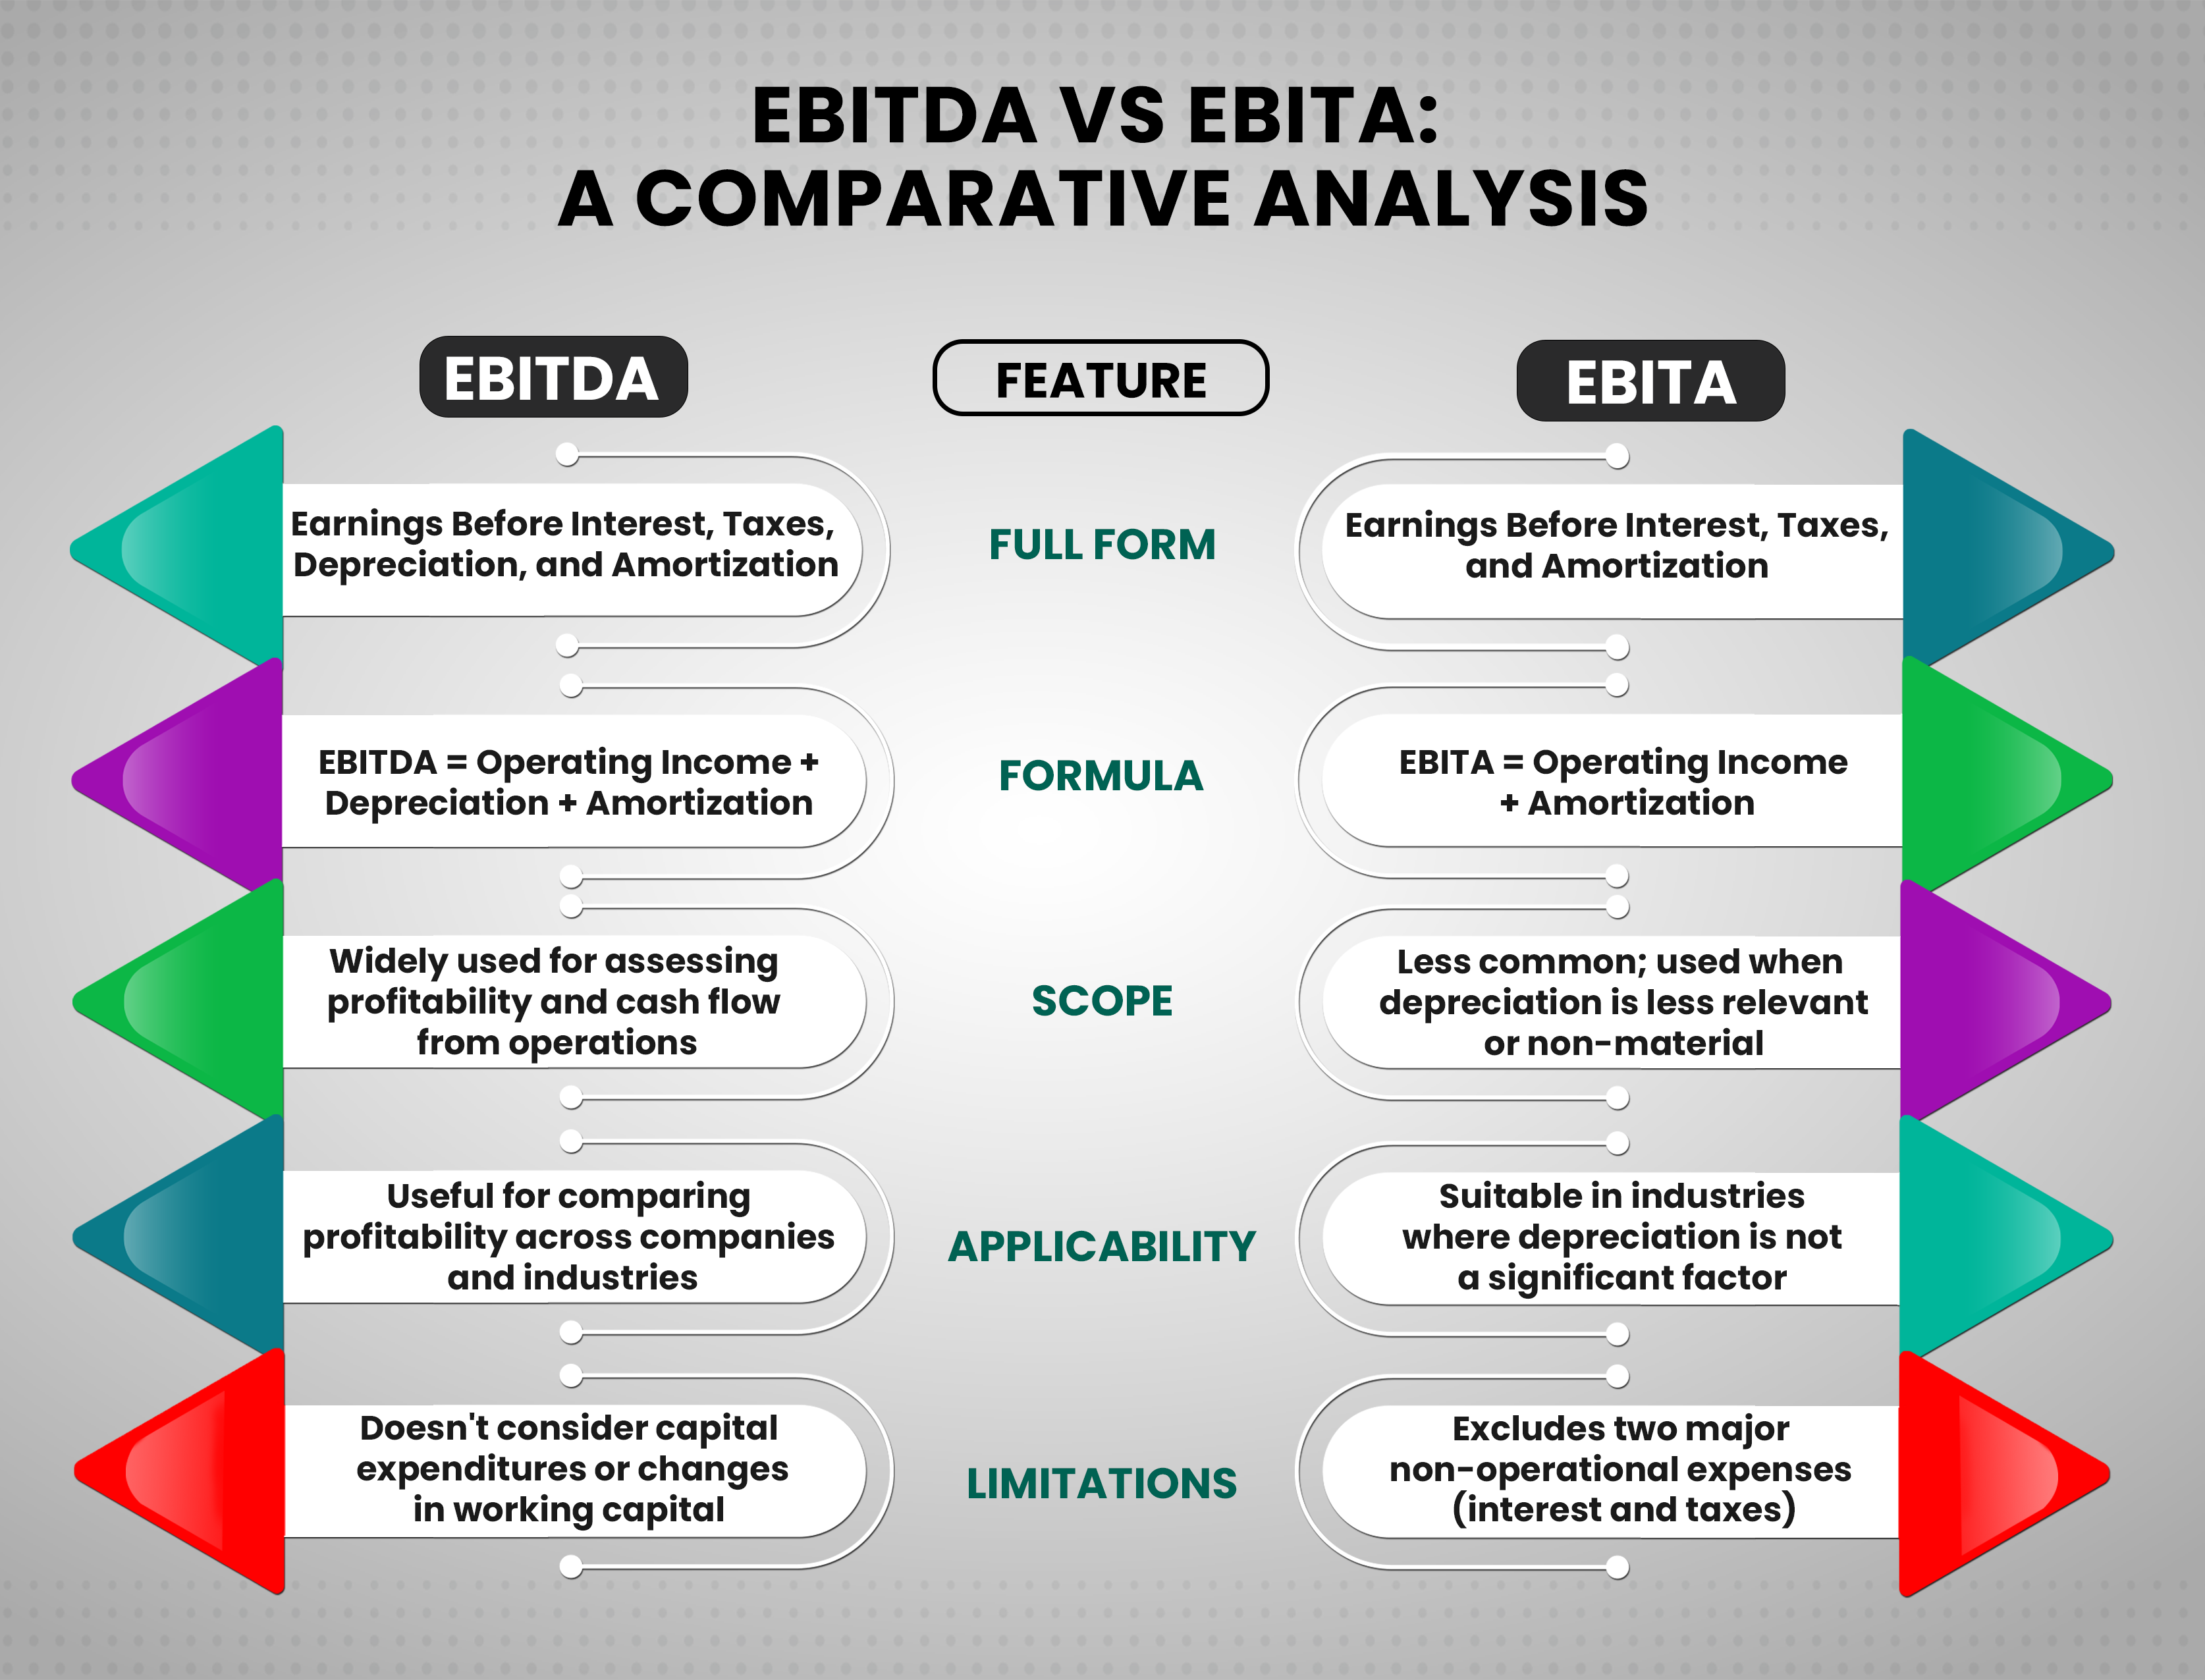 EBITDA vs. EBITA: A Comparative Analysis